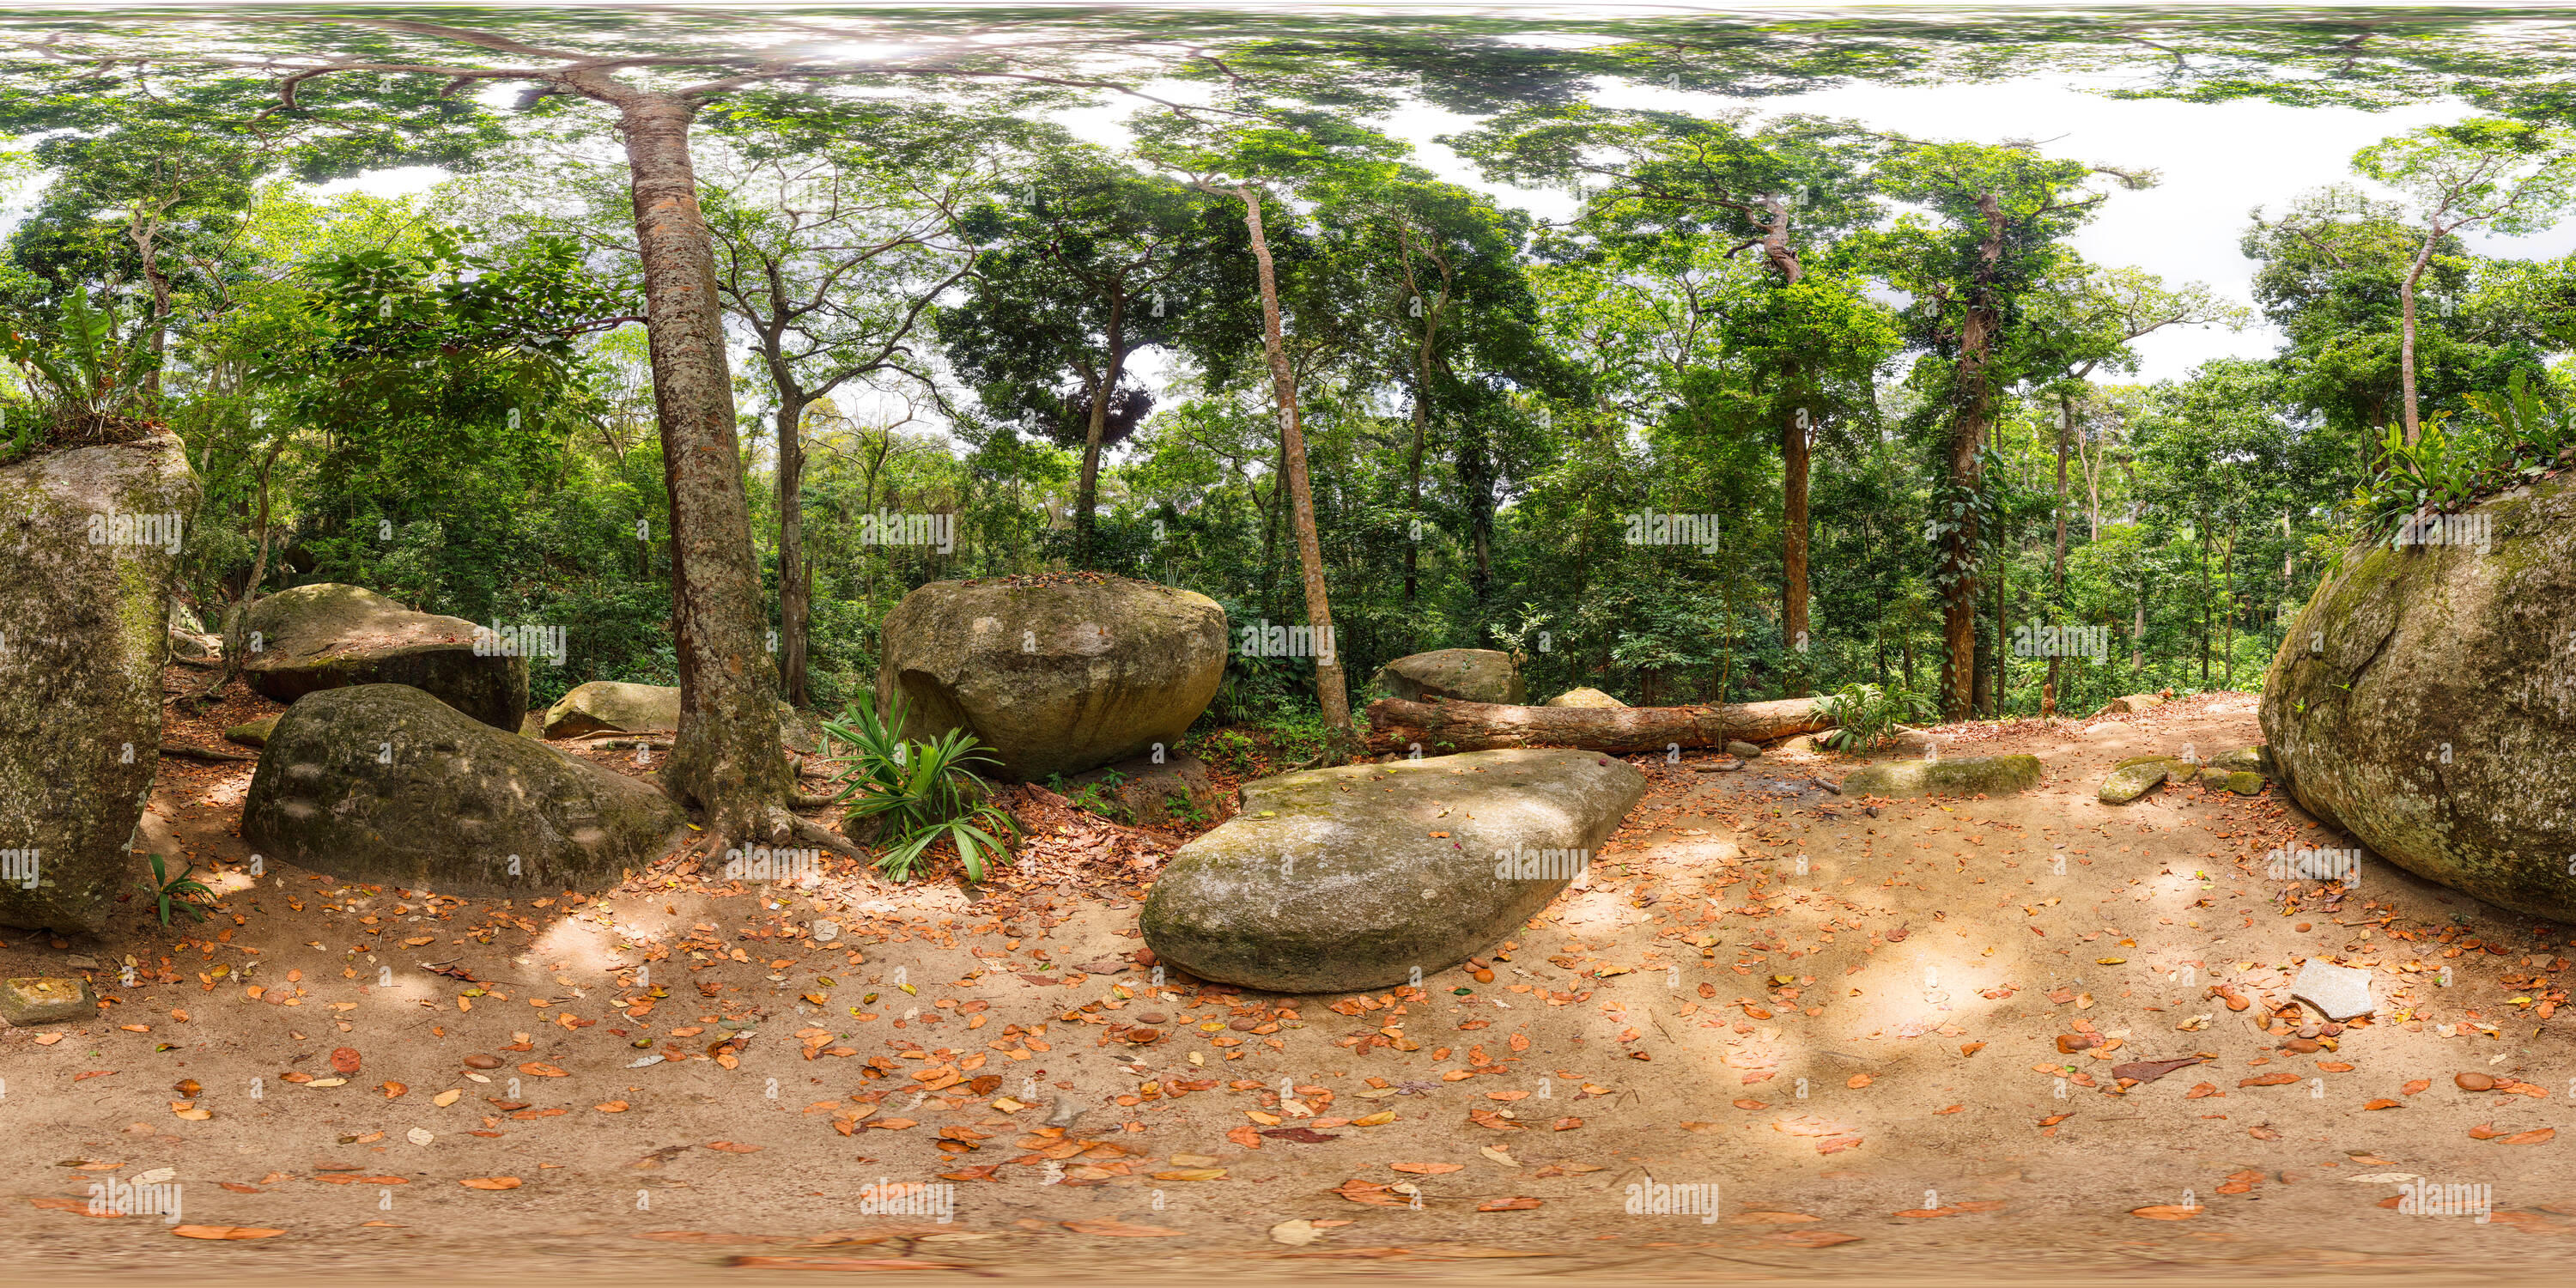 360 Grad Panorama Ansicht von Der Heilige Stein in El Pueblito, das Dorf thene der repräsentativsten Stätten der Tayrona Kultur in Santa Marta, Kolumbien